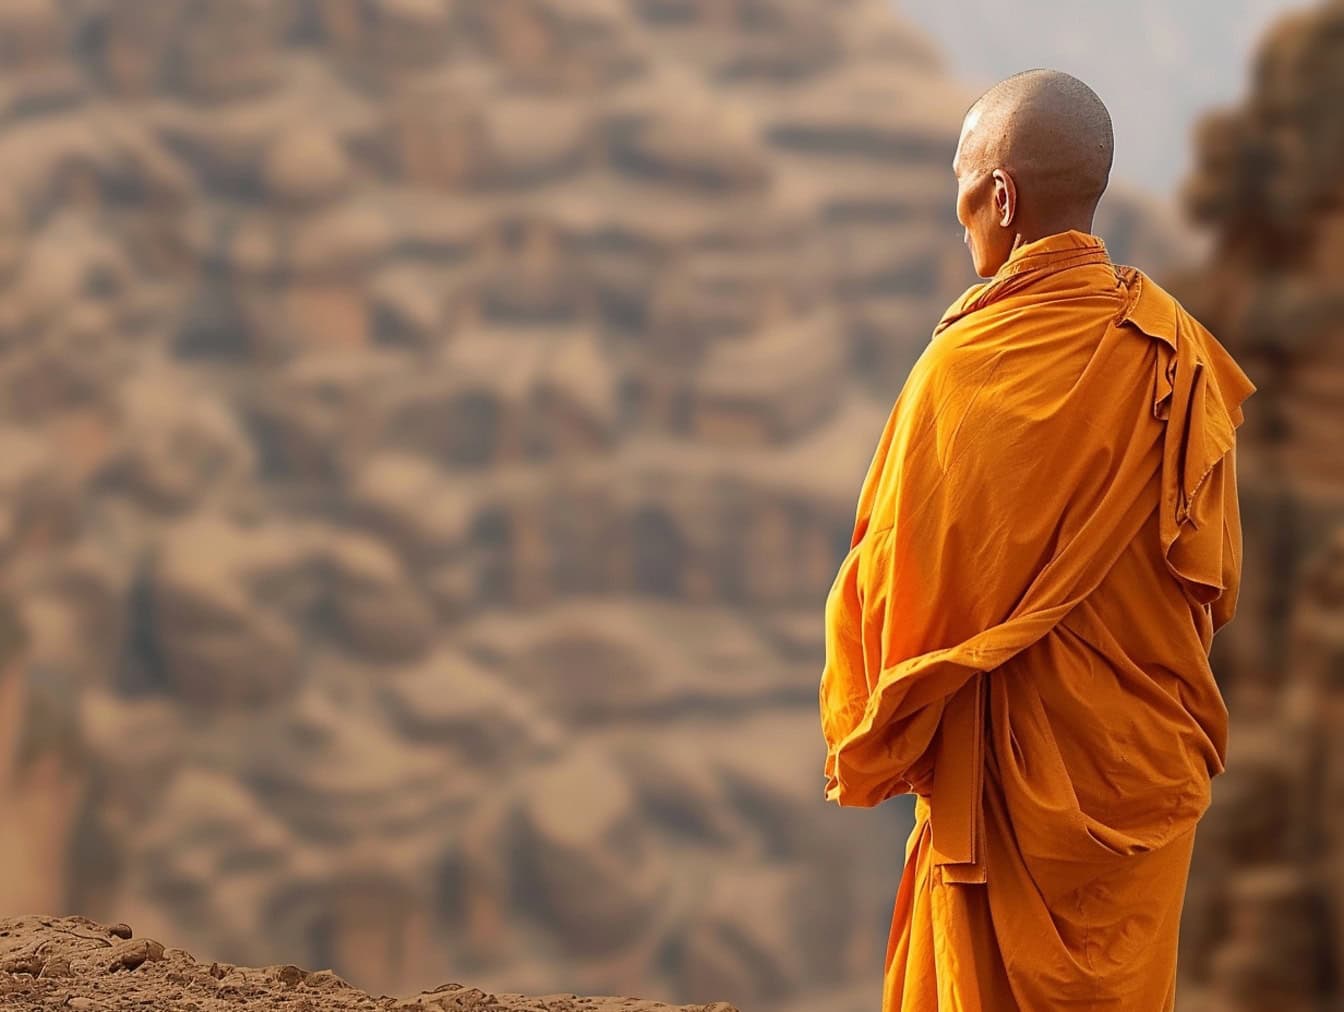 En buddhistisk munk med rakat huvud står med ryggen vänd i öknen klädd i en orange mantel